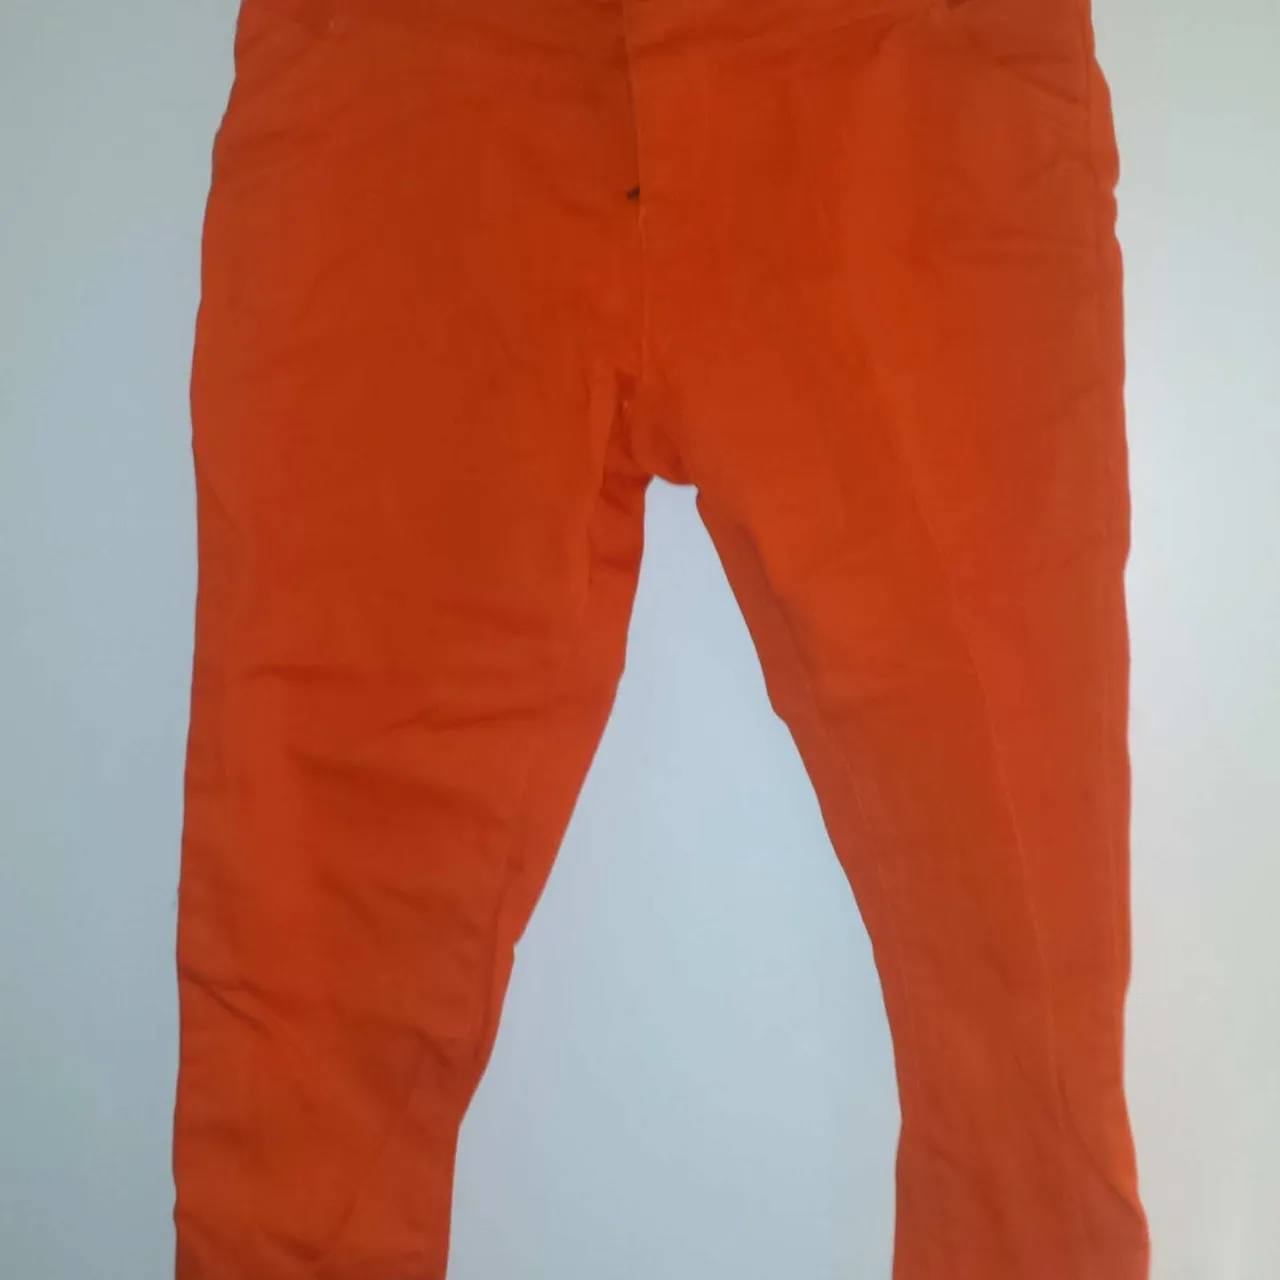 Very Bright Orange Pants photo 1